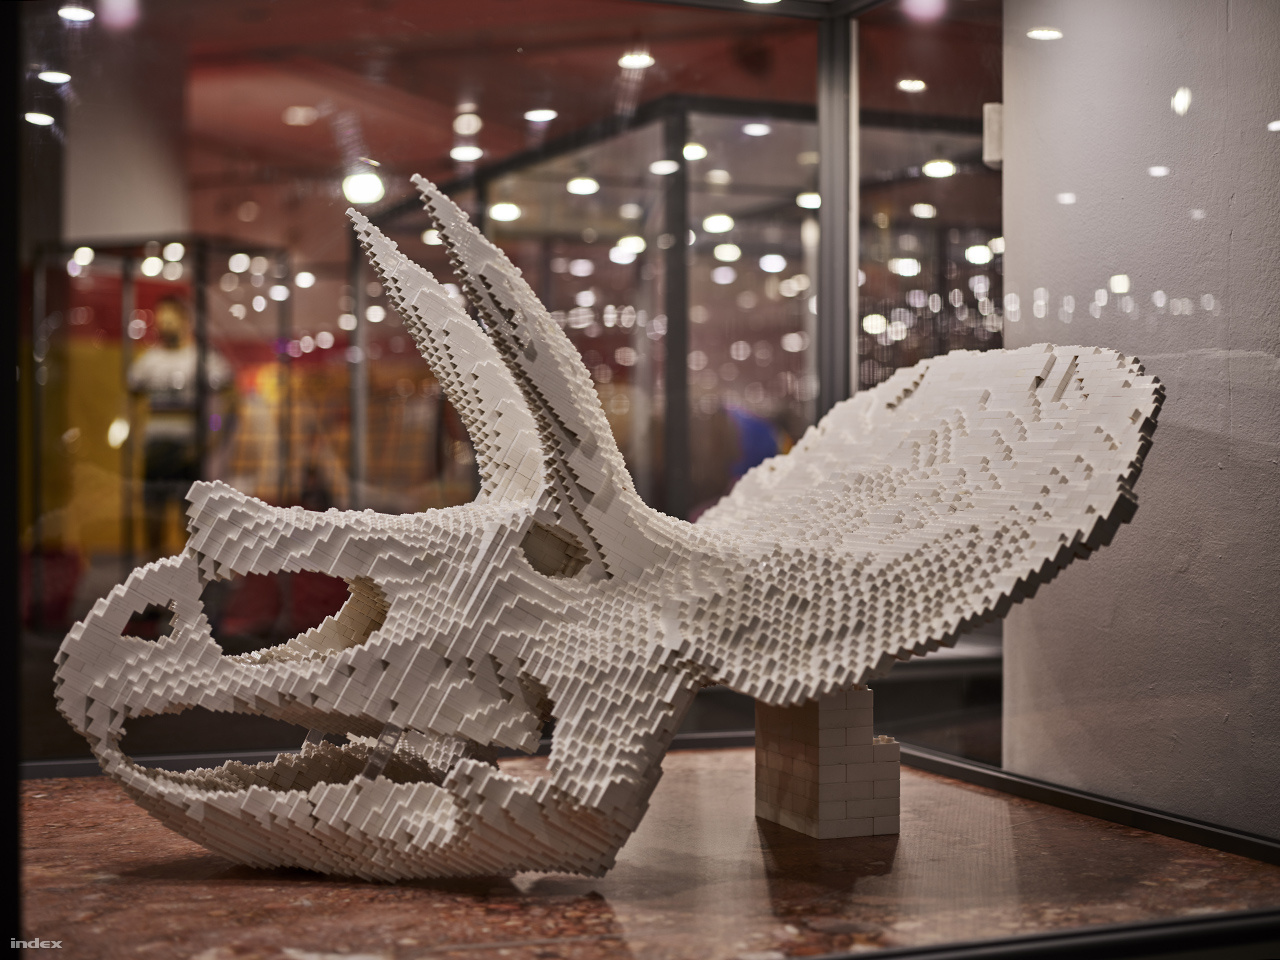 68 millió évvel ezelőtt éltek a földön a triceratopsok. A Kréta-kor nevezetes őshüllőjének Legoból készült koponyáját először 3D-s szoftverrel alkották meg, majd Lego-tervező programmal realizálták a végső építési tervet.